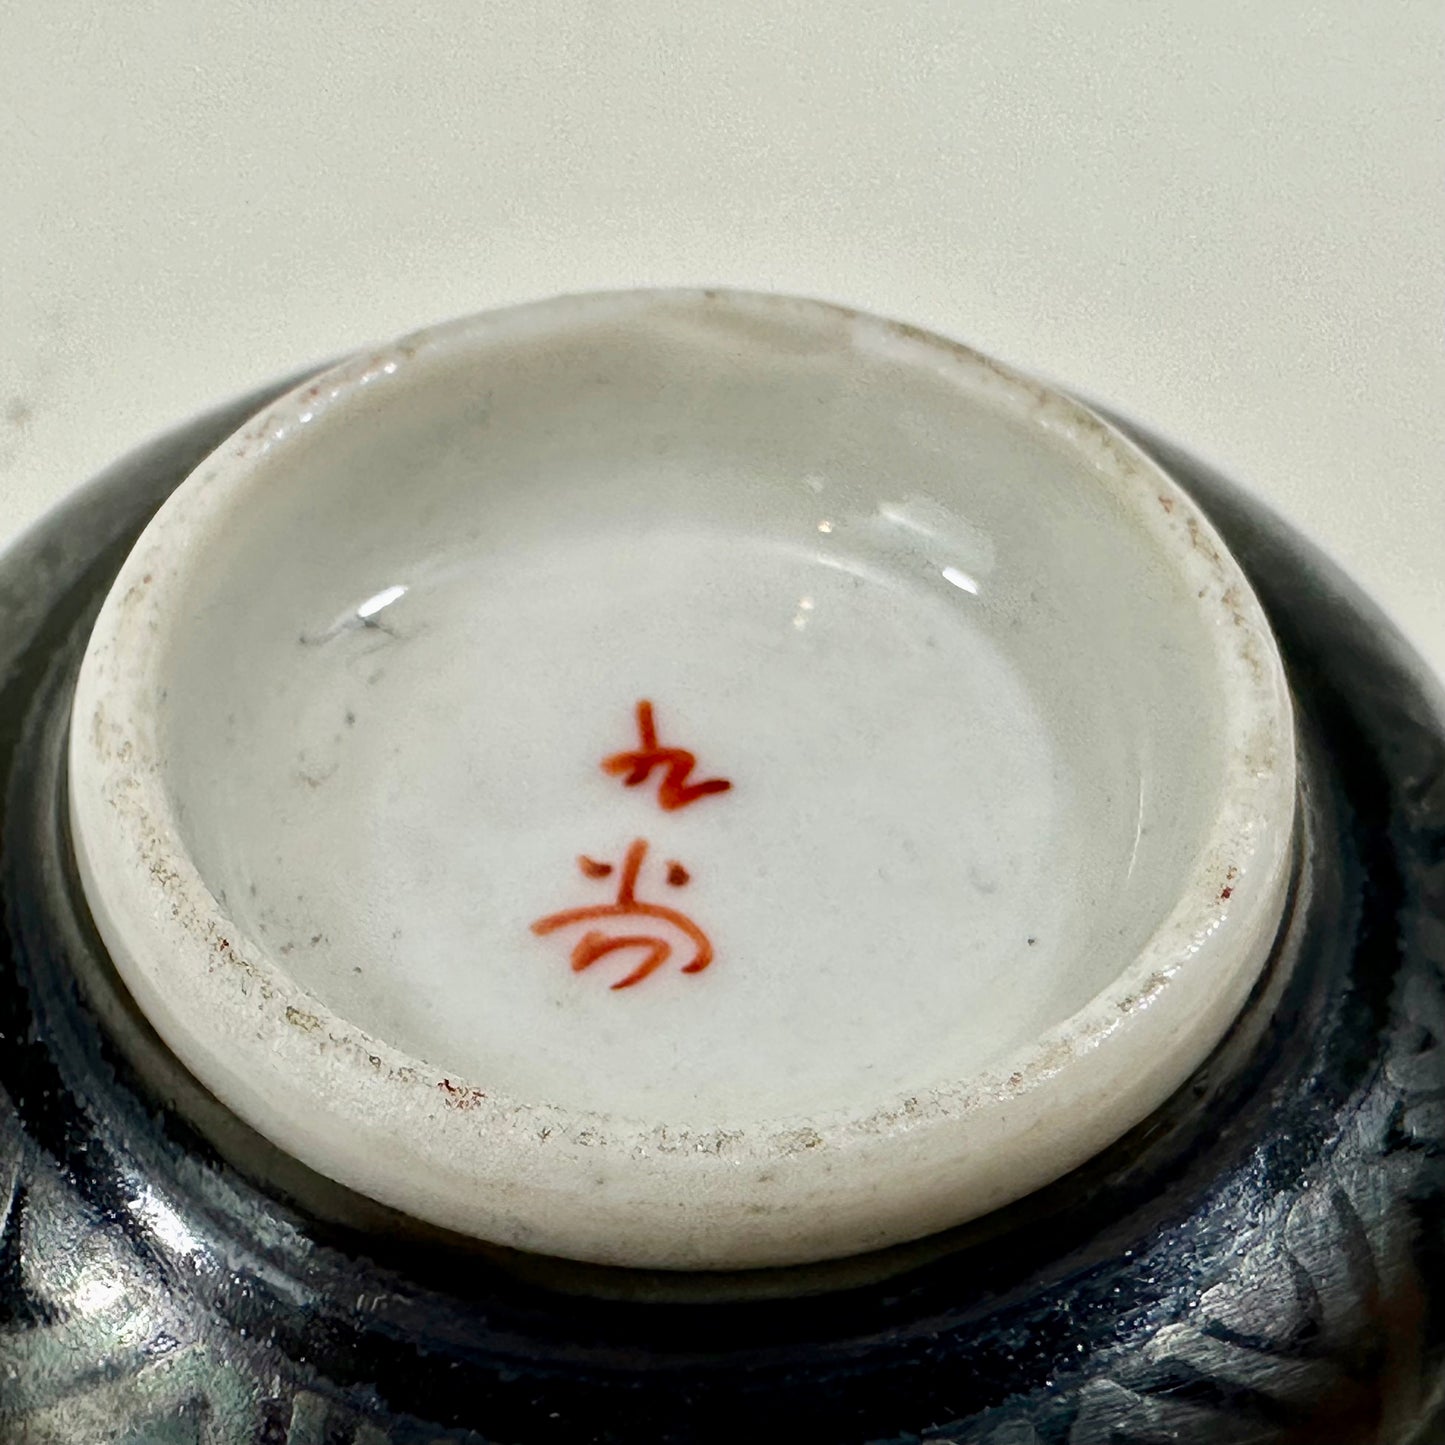 Antique Japanese Early Showa Era c1930's Sake Cup Kutani